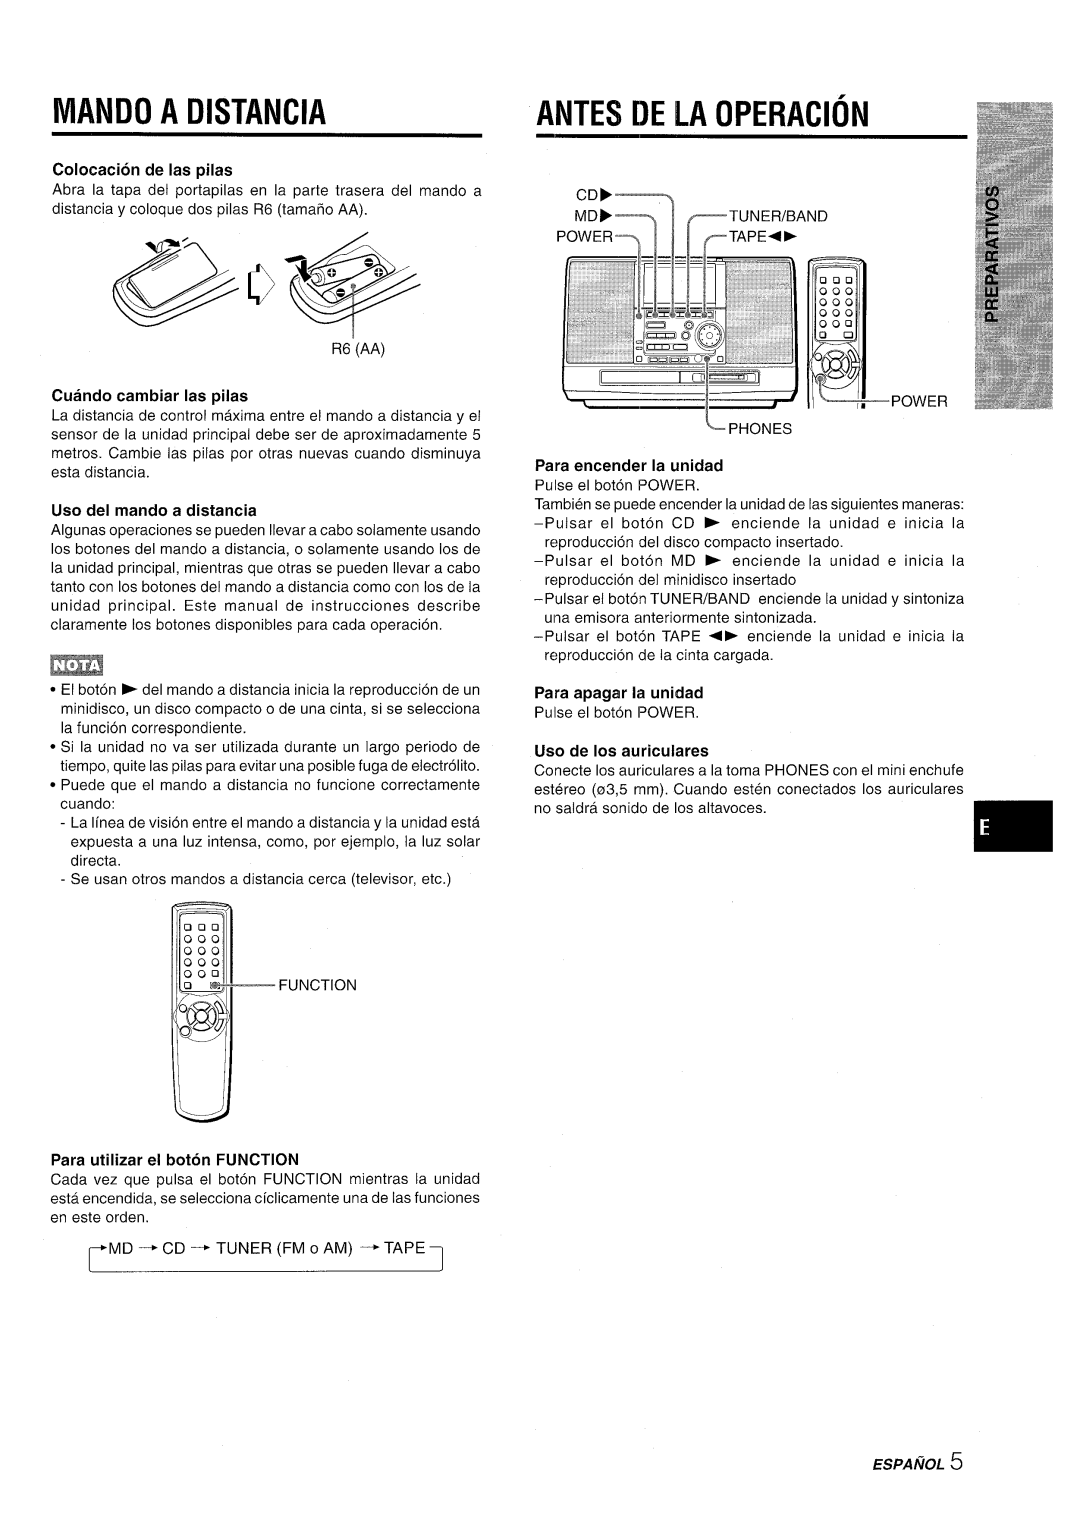 Aiwa CSD-MD50 manual Mando A Distancia, Antes De La Operacion, Colocacion de Ias pilas, Cuando cambiar Ias pilas, Espanol 